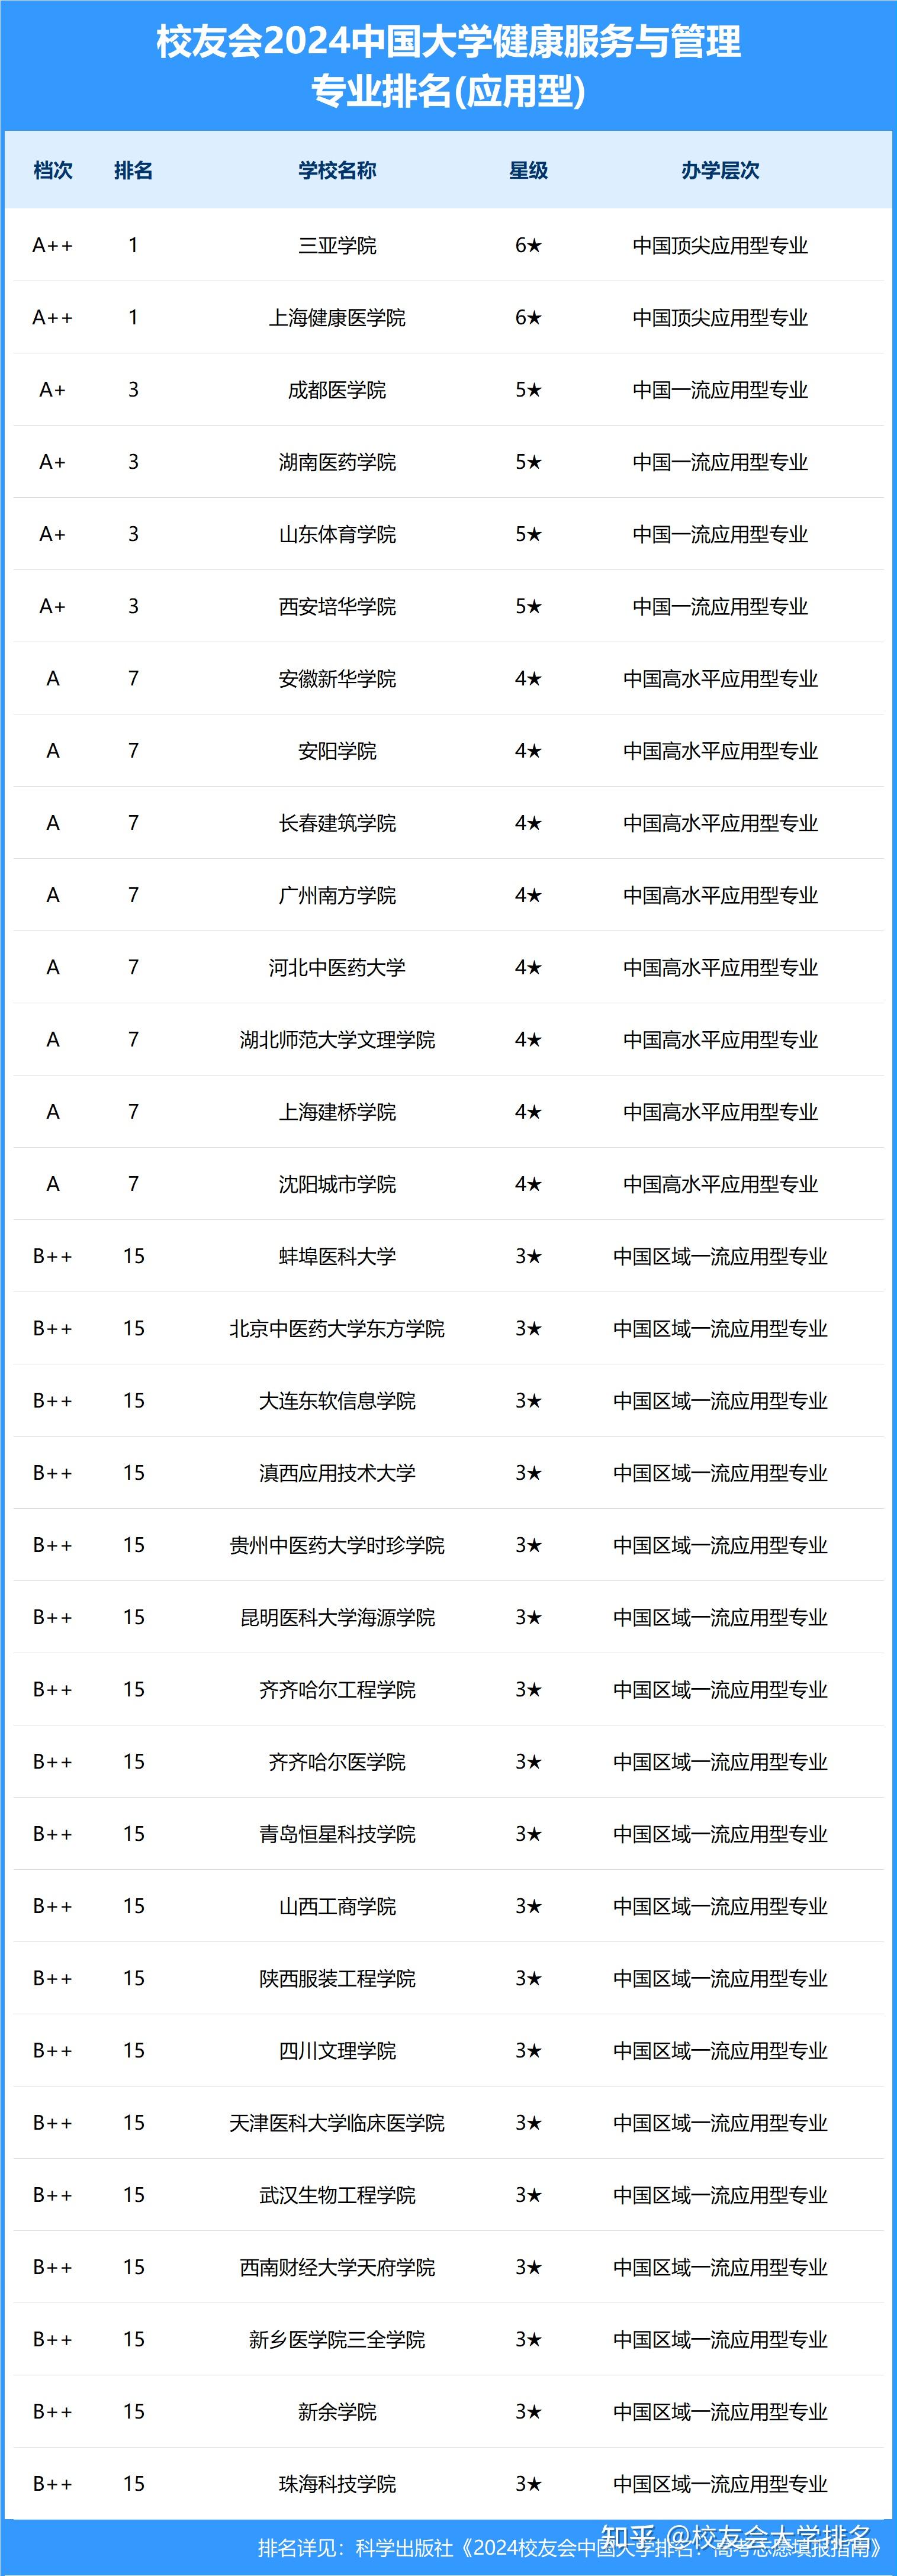 校友会2024中国大学健康服务与管理专业排名(应用型)中,三亚学院(6